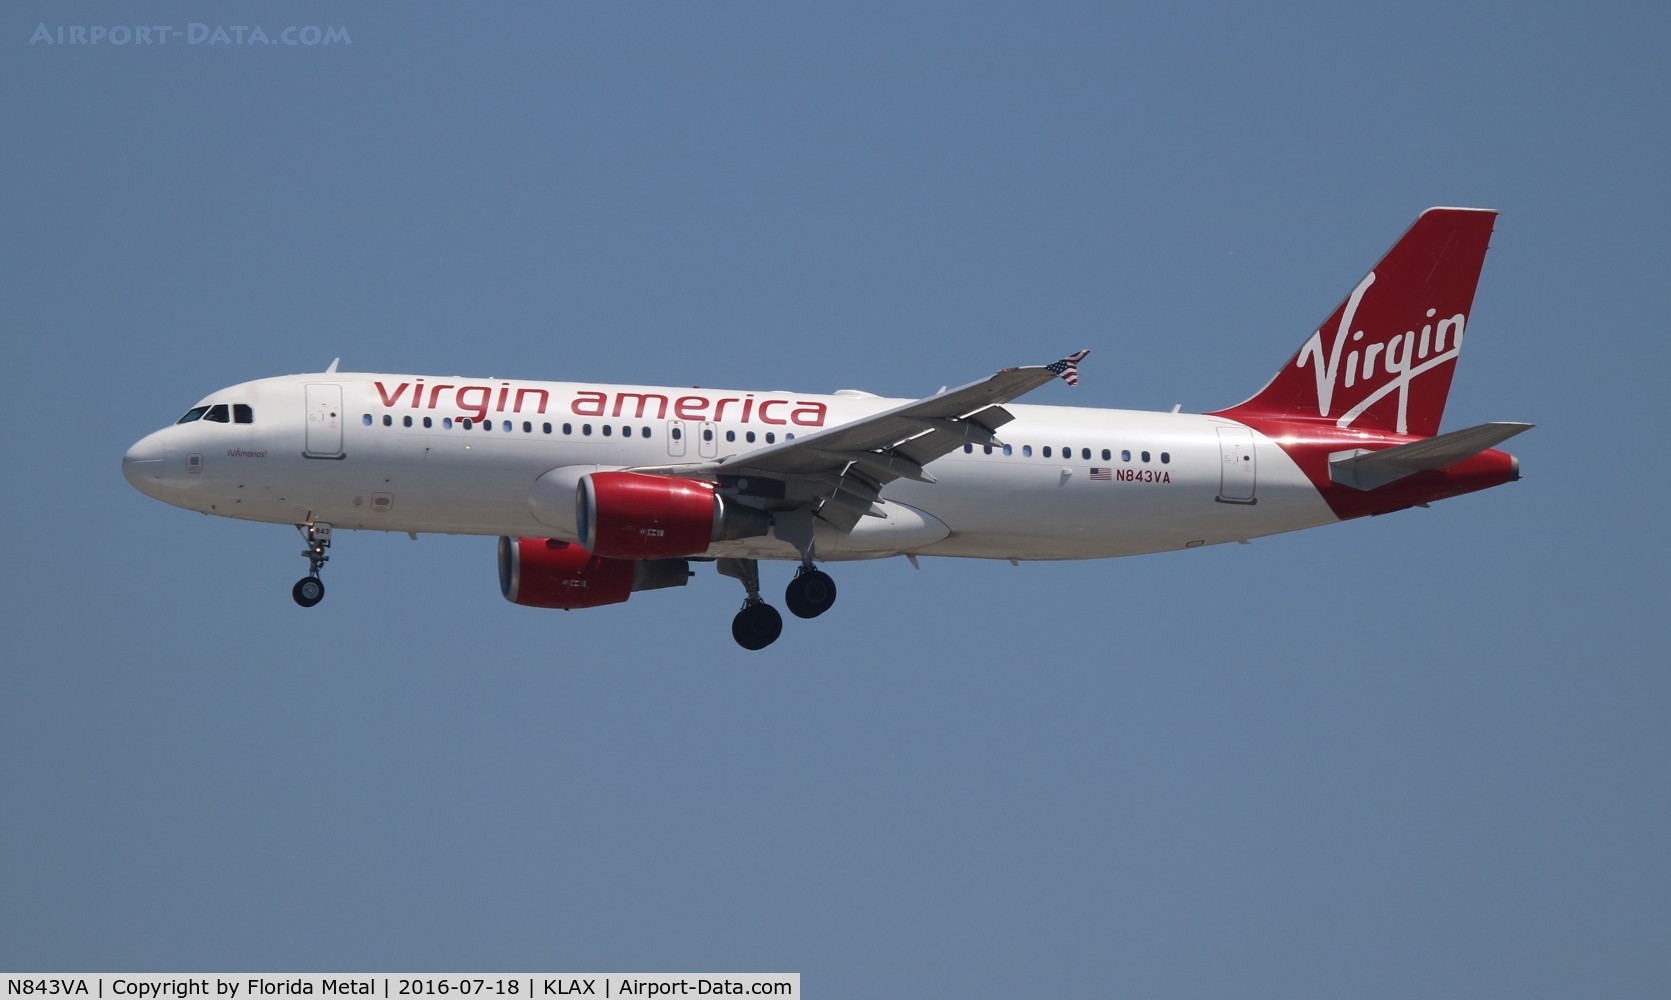 N843VA, 2011 Airbus A320-214 C/N 4814, Virgin America